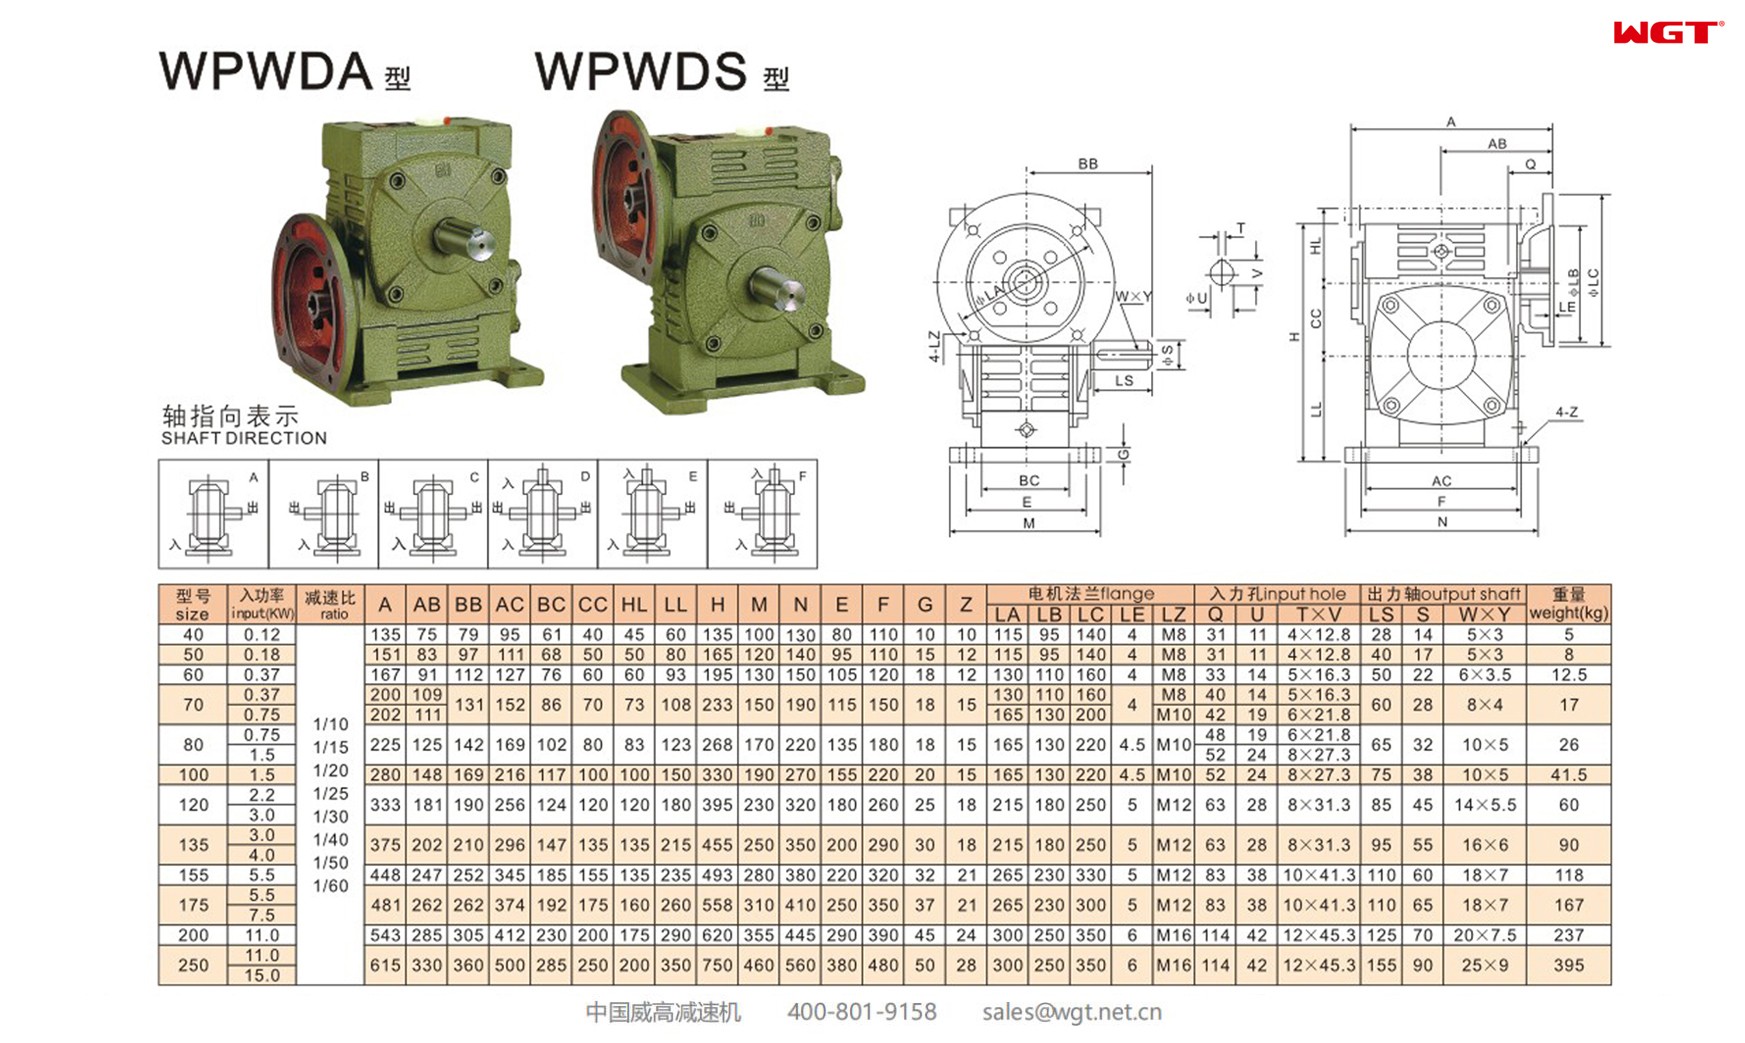 WPWDA50 worm gear reducer universal speed reducer